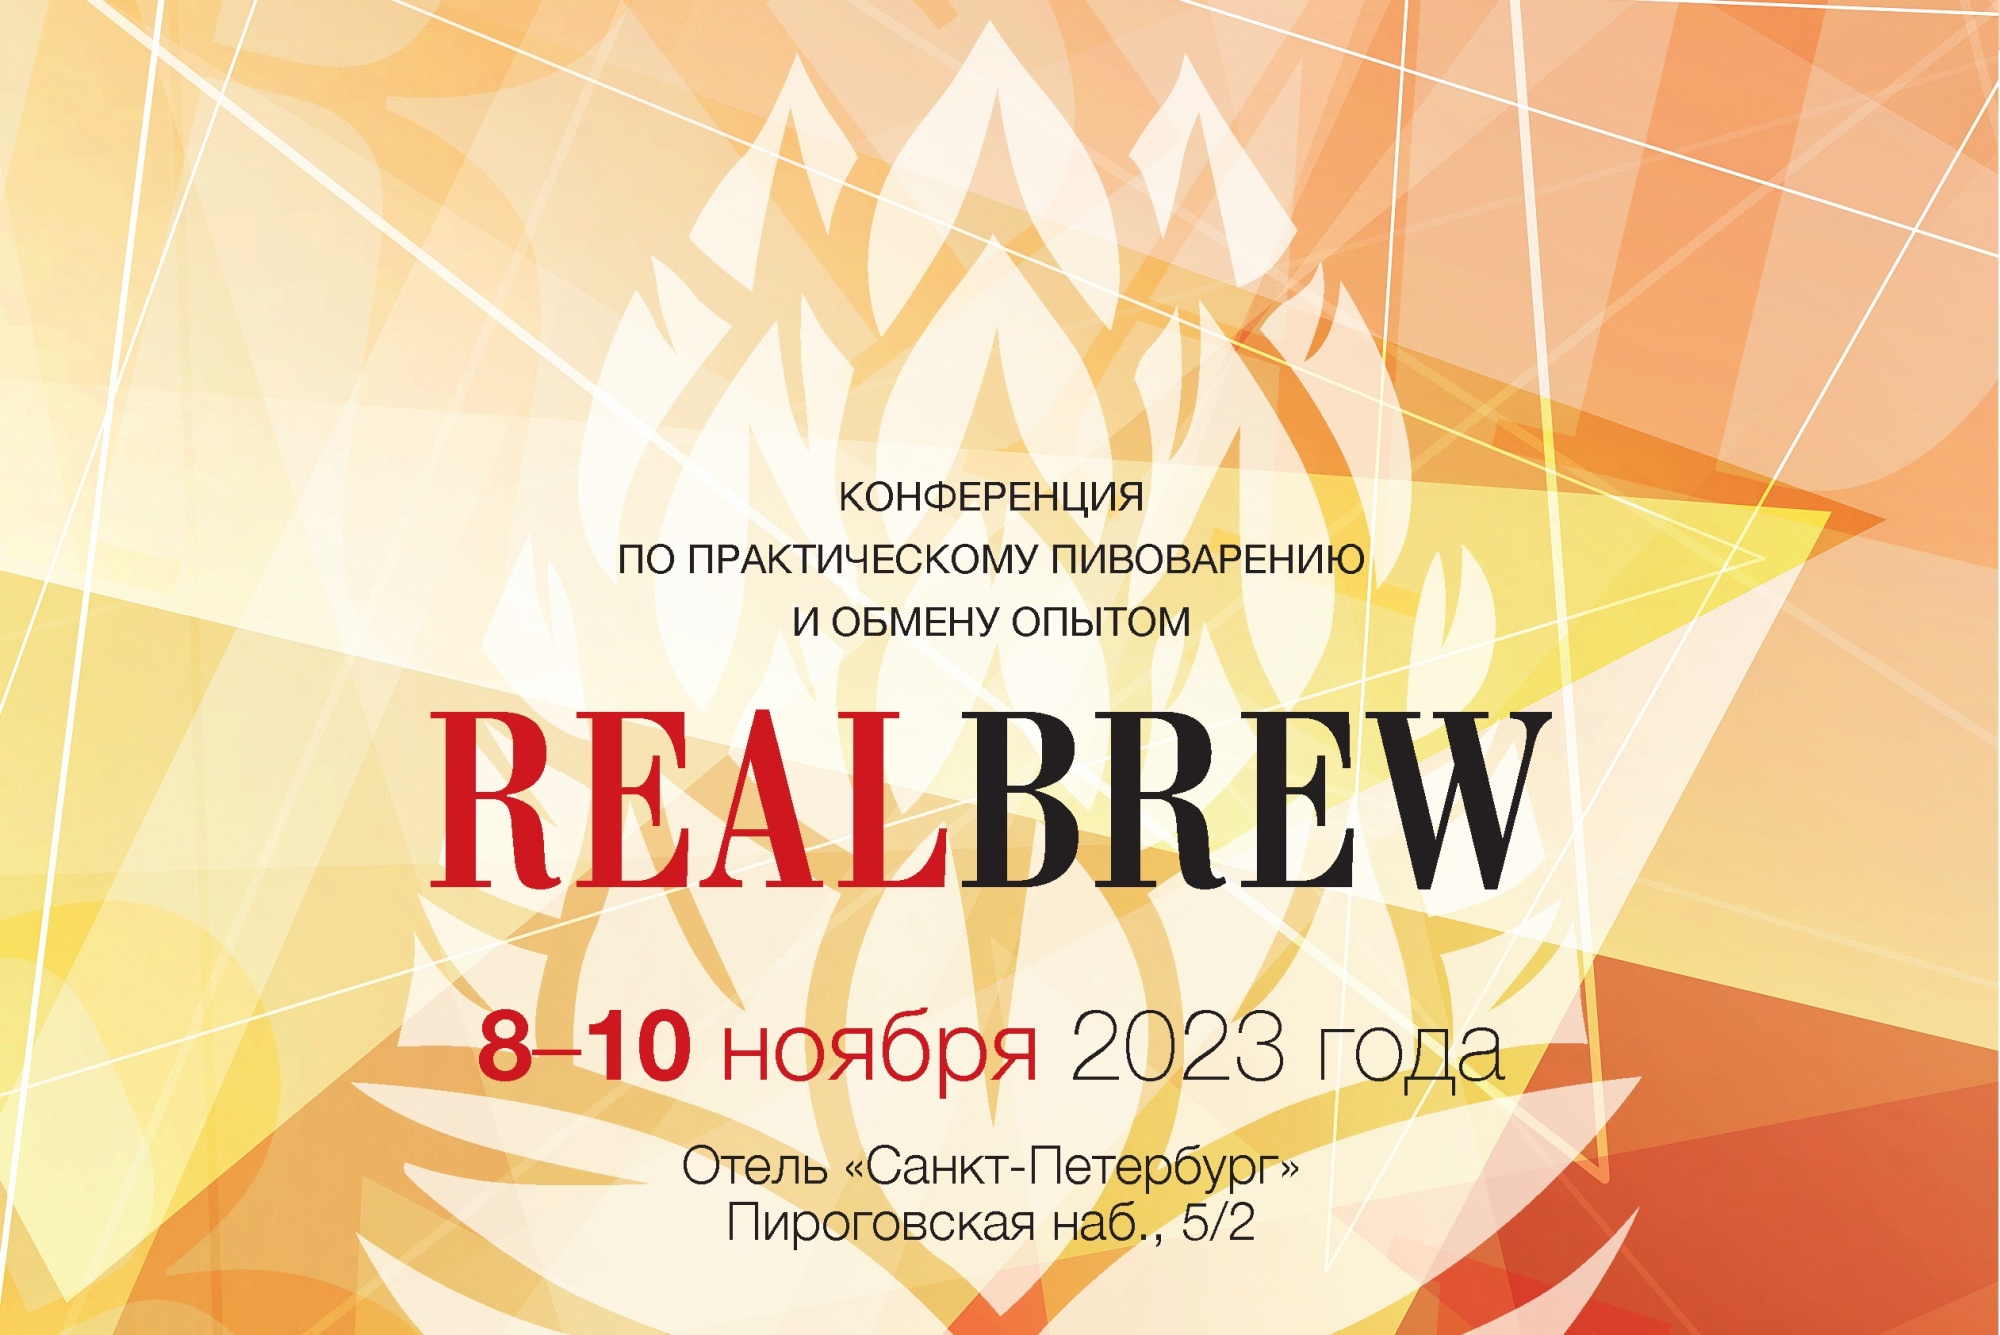 Конференция по практическому пивоварению и обмену опытом «REALBREW 2023», г. Санкт-Петербург.